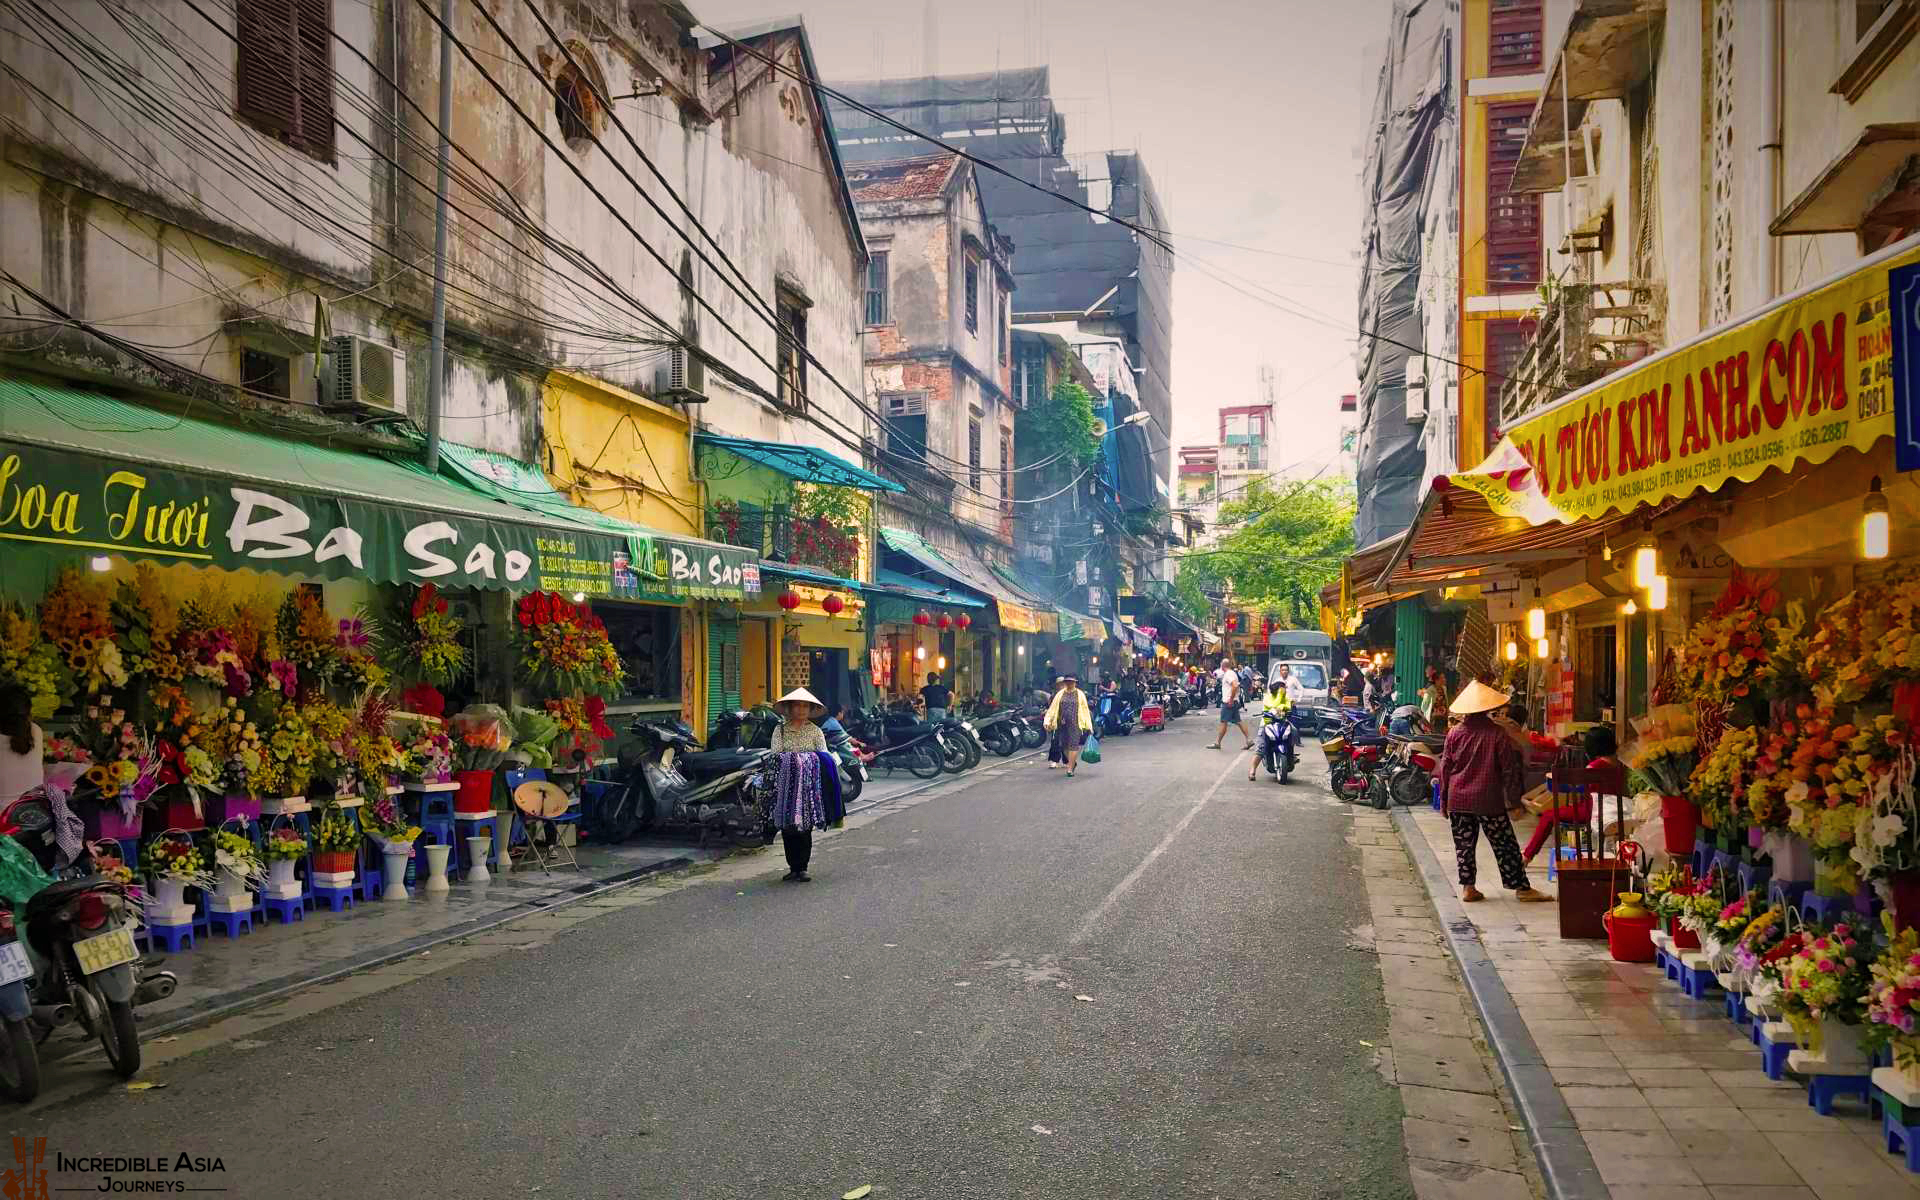 Hang Be Market in Hanoi Old Quarter